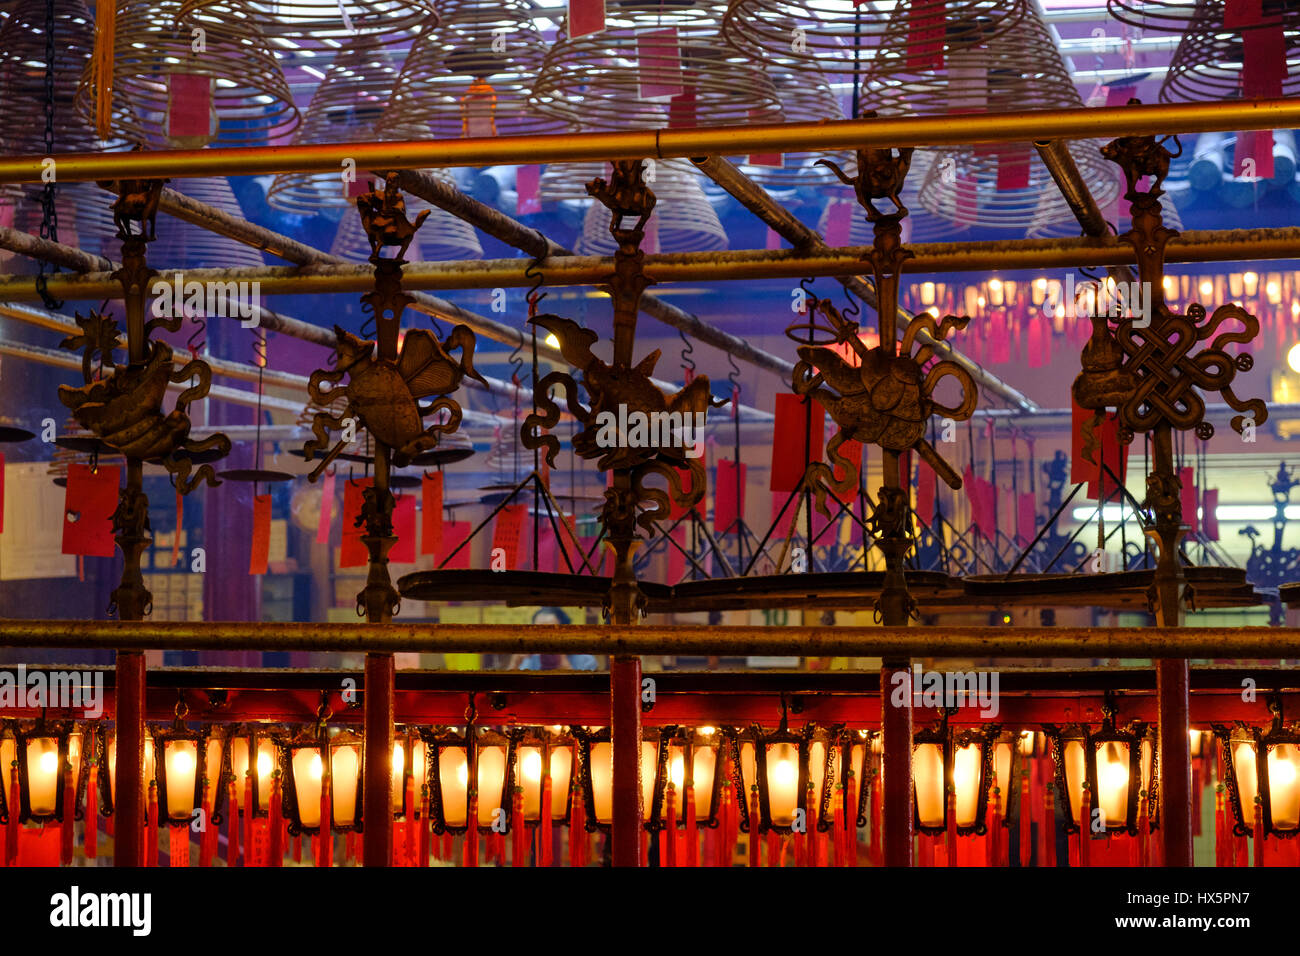 Lanterne rosse, bobine di incenso e altre decorazioni all'interno del Tempio di Man Mo, Hollywood Road, Sheung Wan, Isola di Hong Kong, Cina. Foto Stock